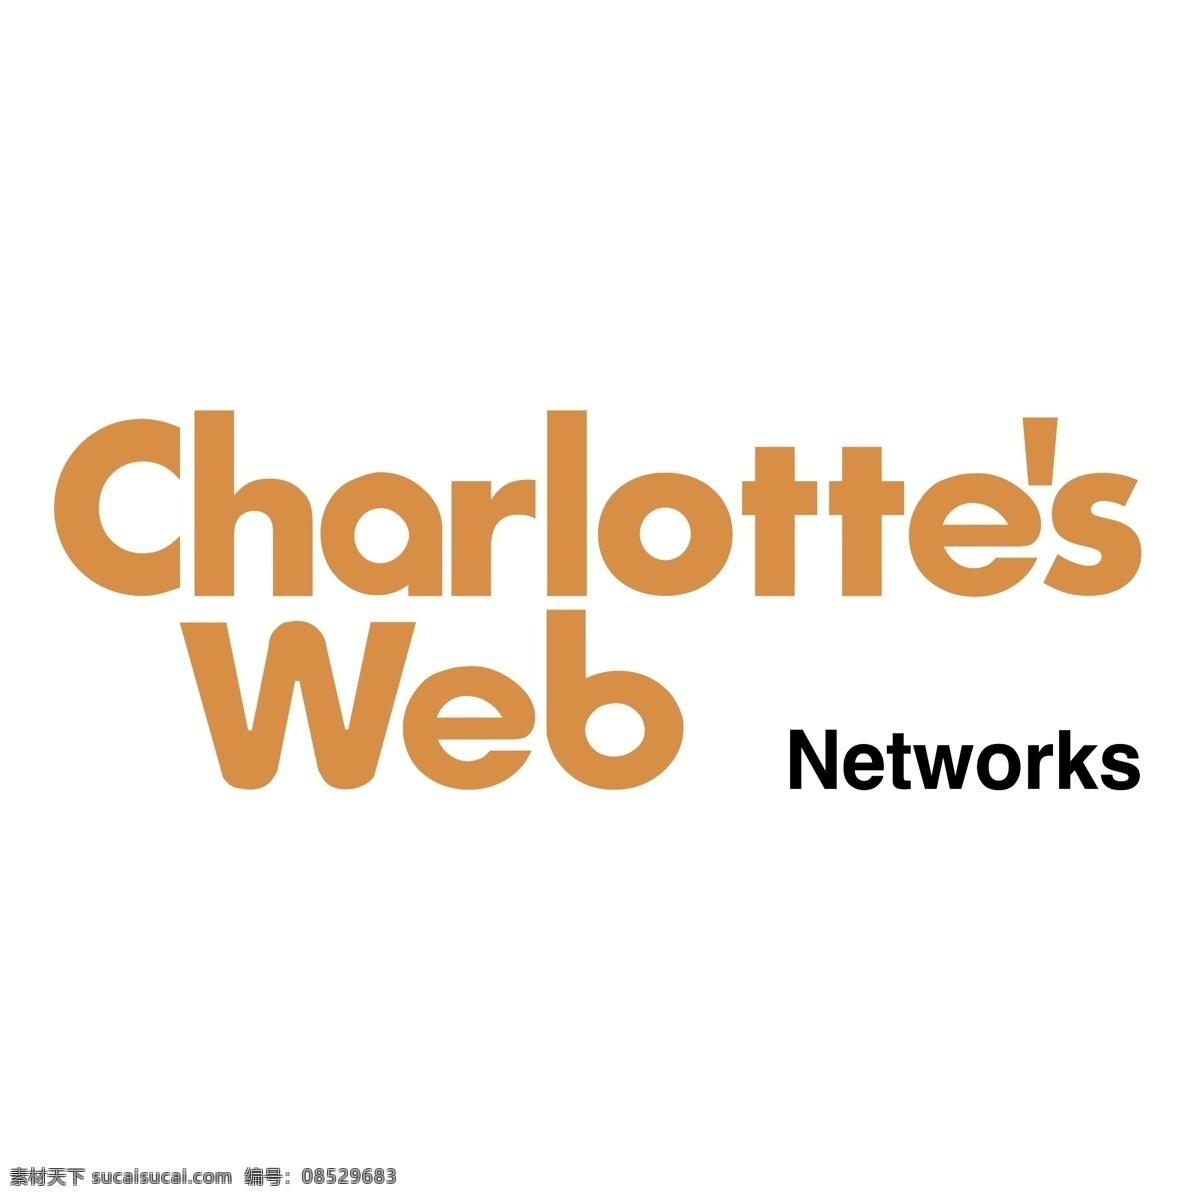 夏洛特 网 网络 夏洛特的网 矢量图 其他矢量图